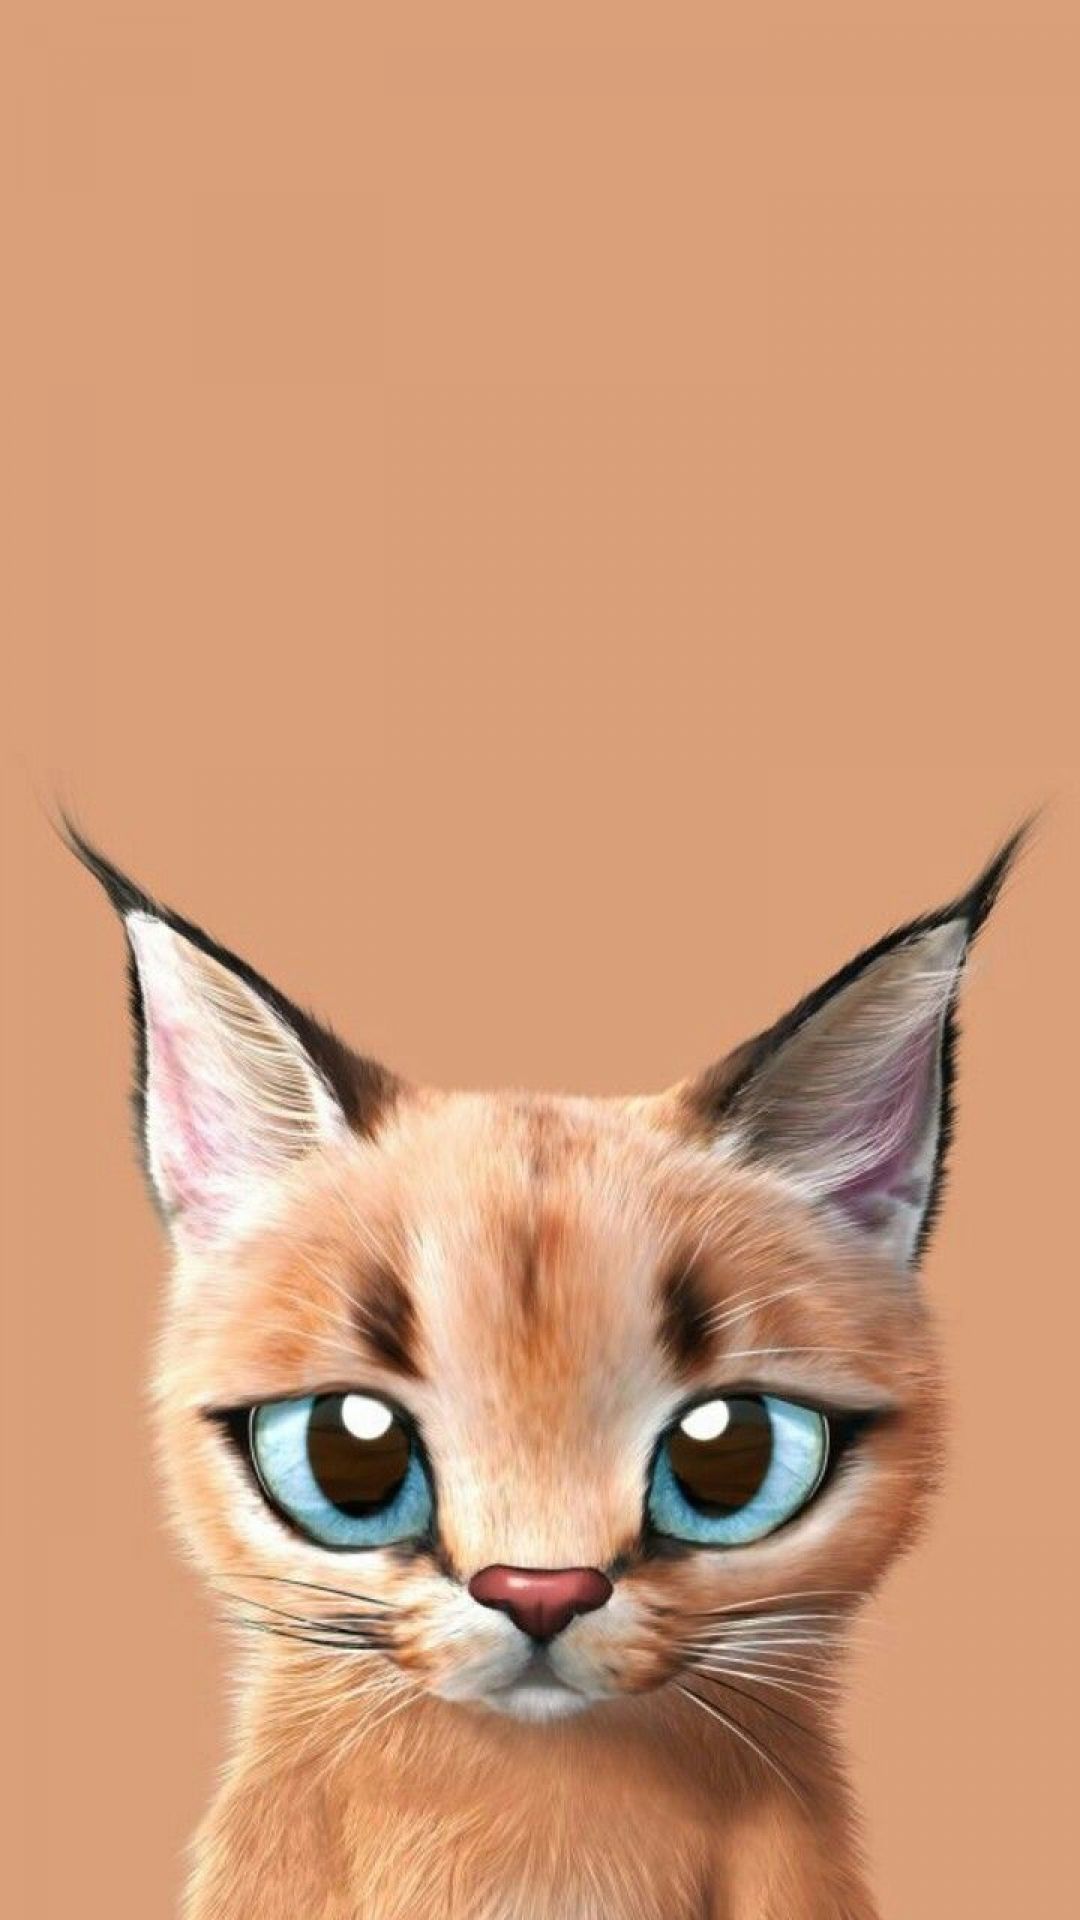 Kawaii Anime Cat, iPhone, Desktop HD Background / Wallpaper (1080p, 4k) #hdwallpaper #androidwallpaper #ipho. Cat wallpaper, Cat art, Cats